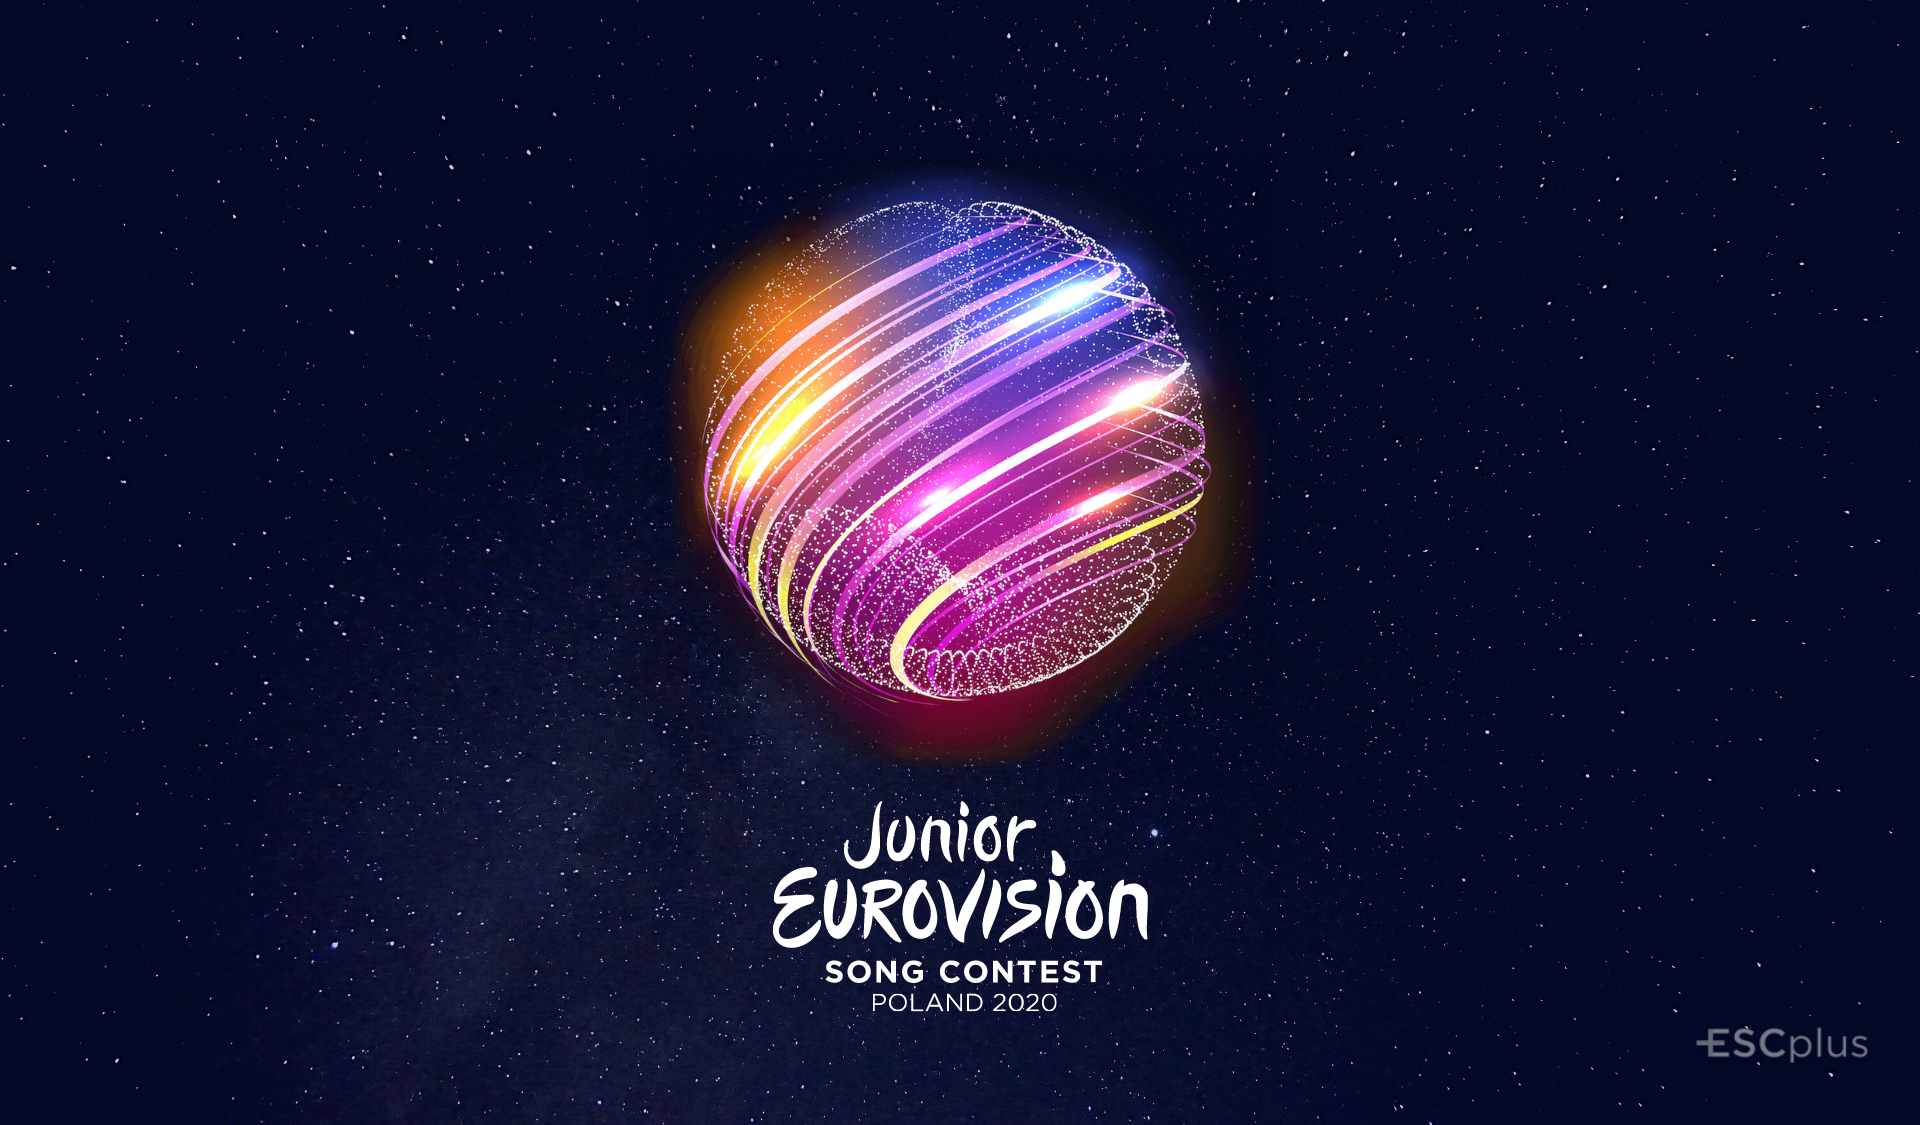 La UER confirma el sistema de votación de Eurovisión Junior 2020. La audiencia solo podrá votar a 3 países